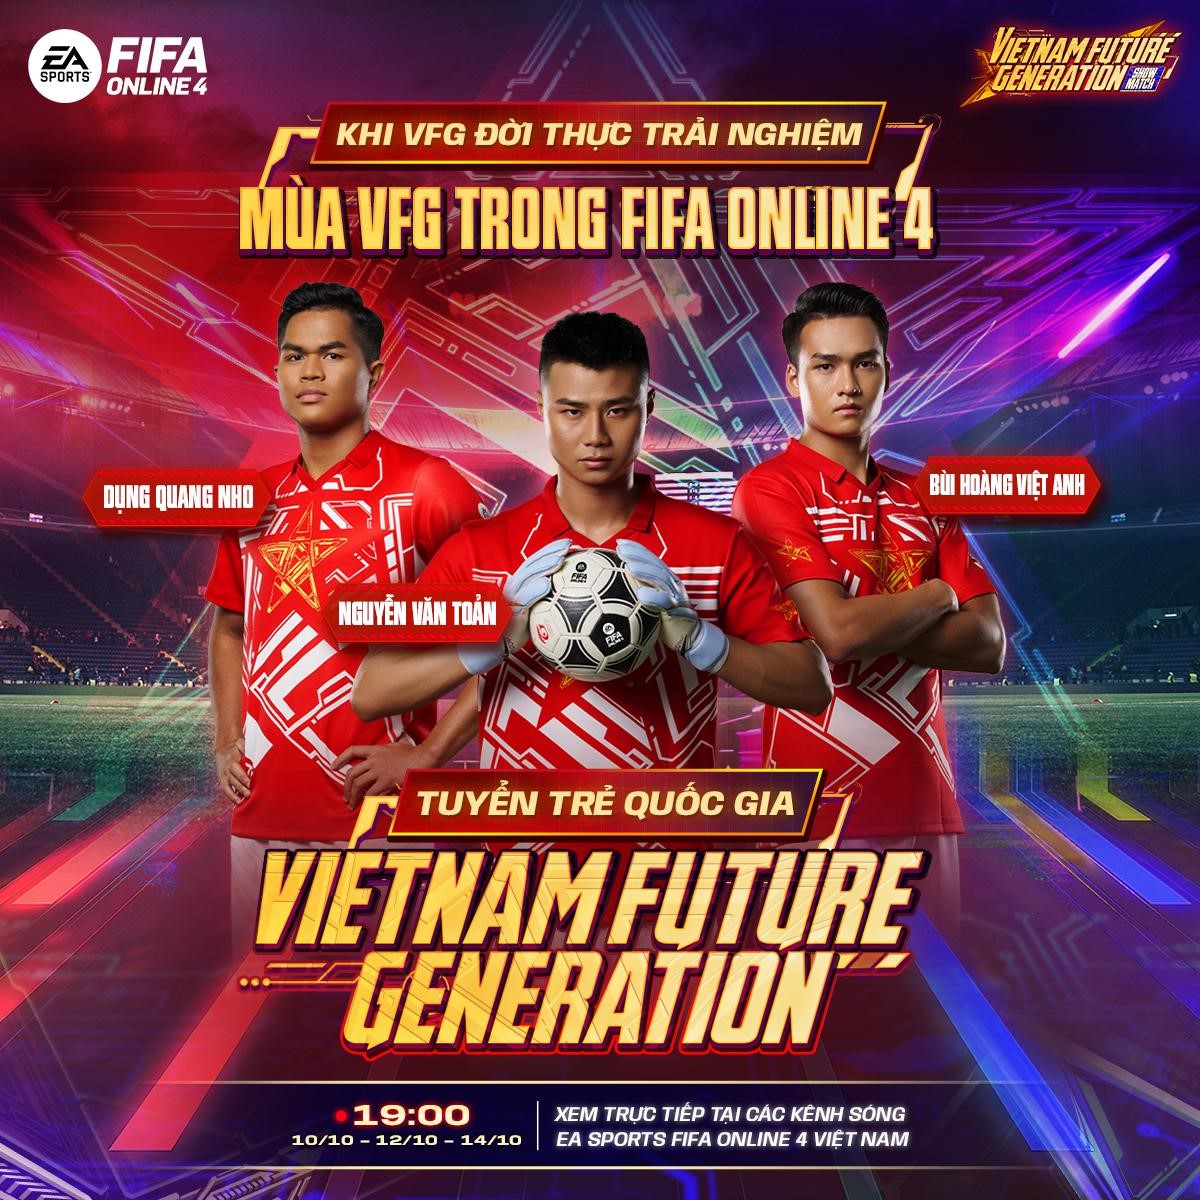 Refund Gaming tranh tài cùng U23 Việt Nam tại FIFA Online 4 VFG Showmatch 2022 - Ảnh 3.